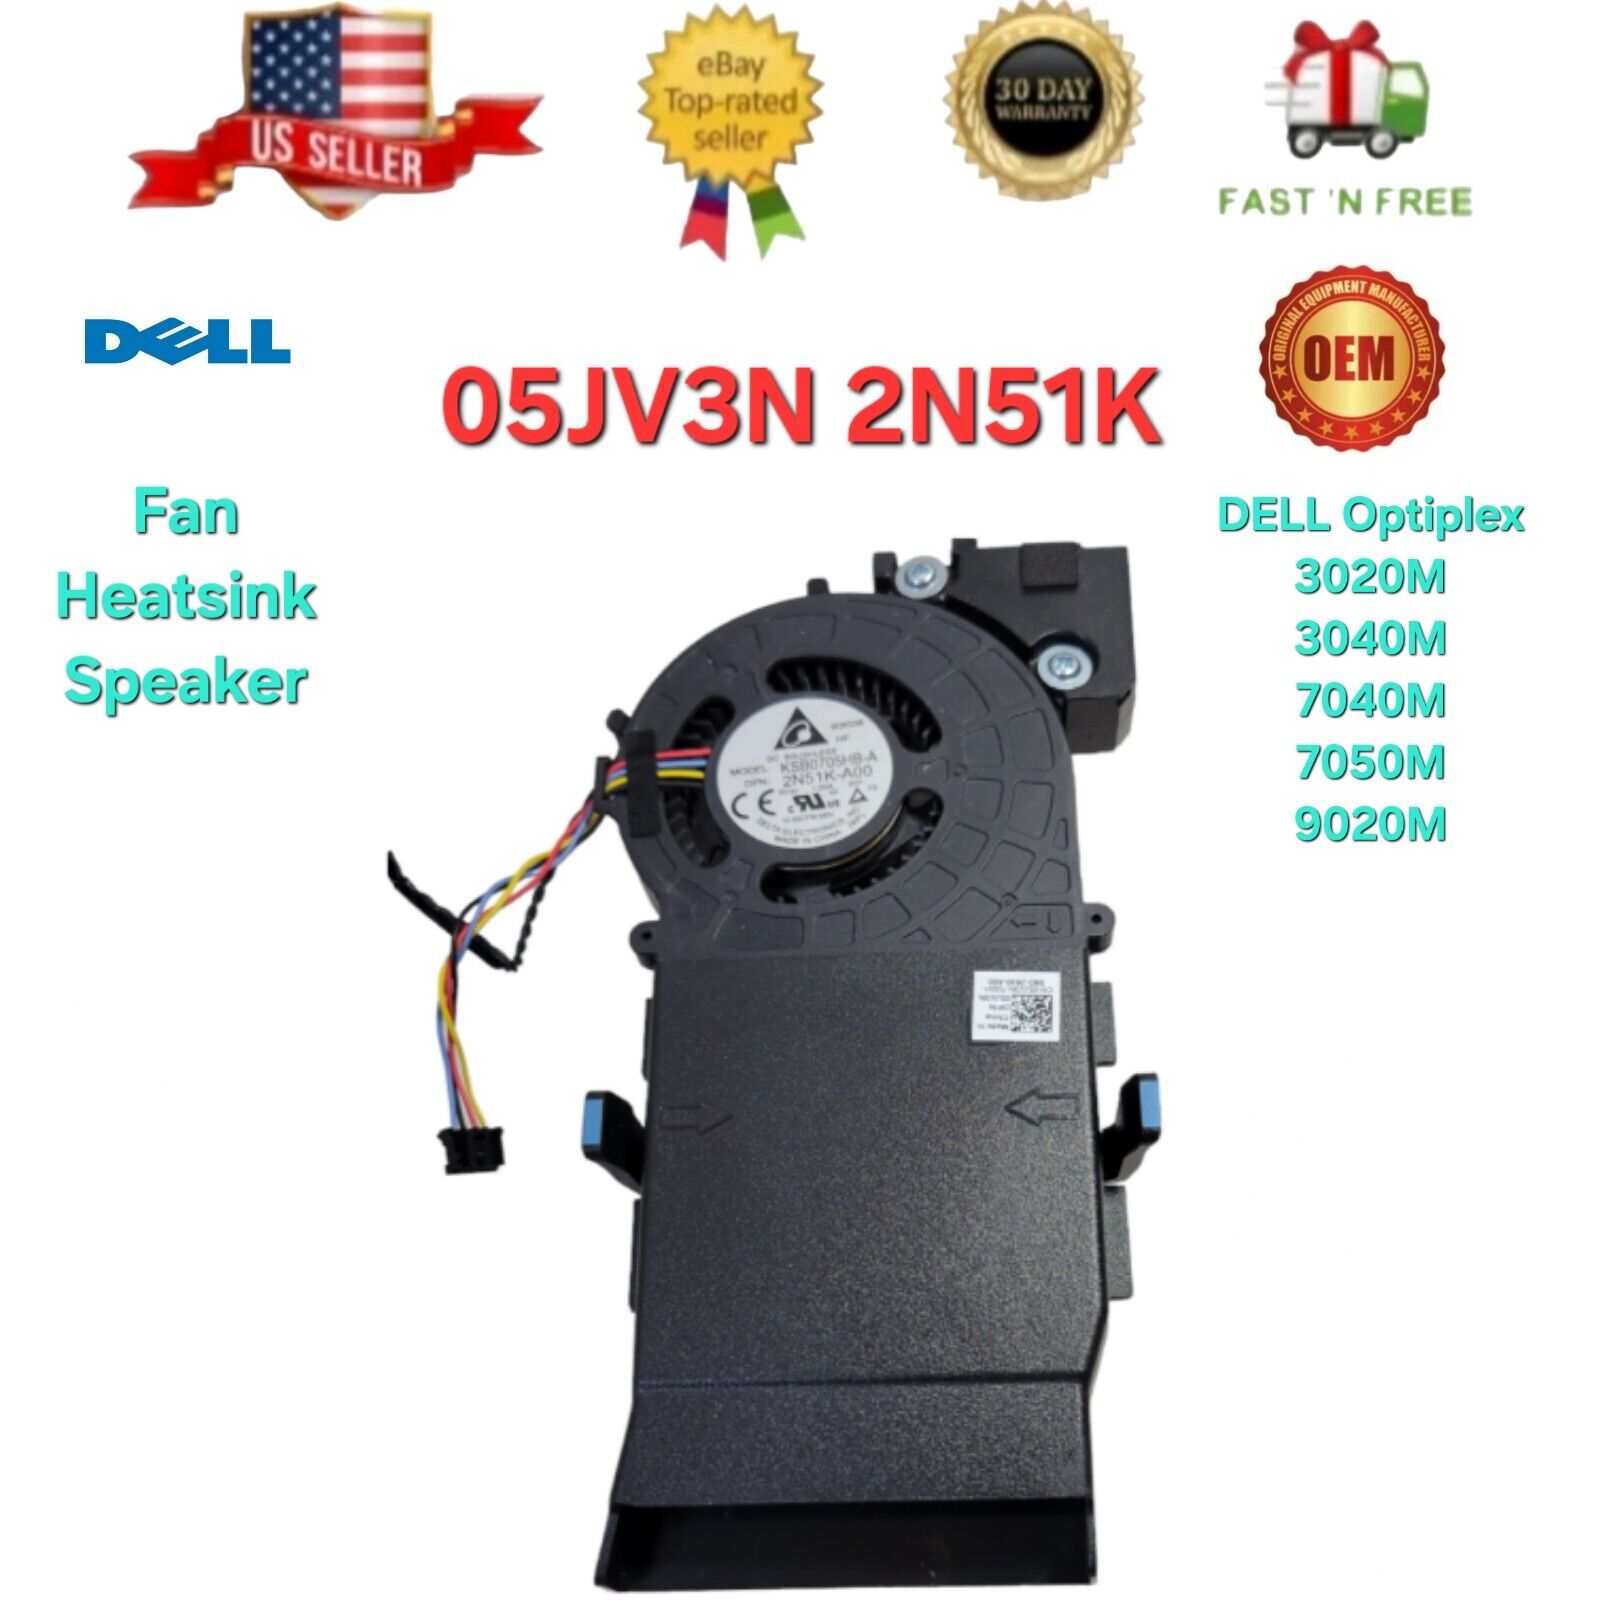 OEM Dell Optiplex 7040M 7050M 3040M  5JV3N 2N51K 6PFFY Fan Heatsink Speaker